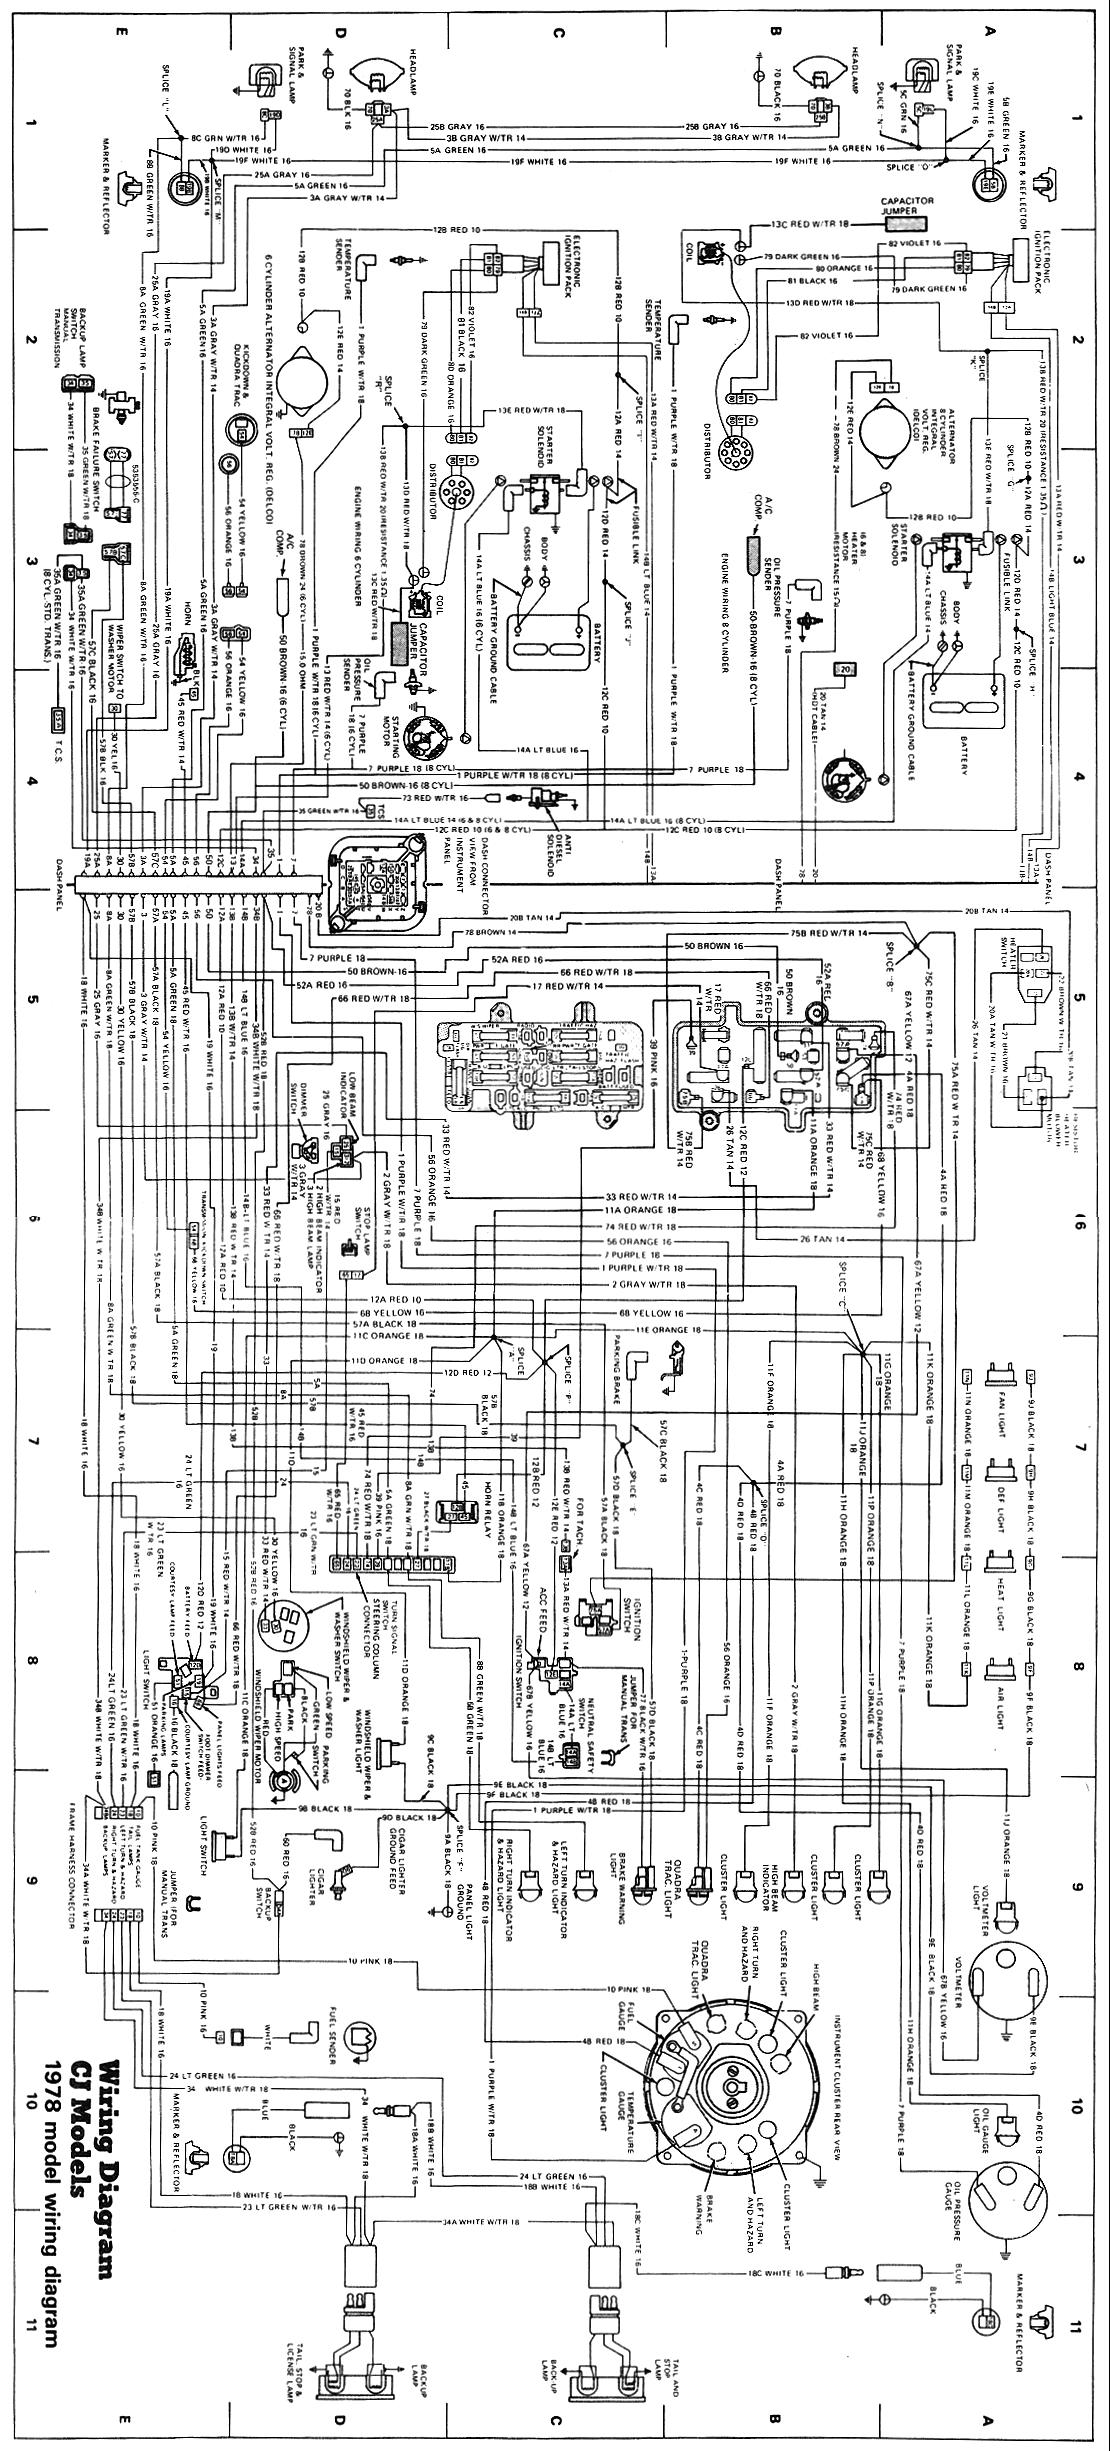 Wiring Schematics | eWillys Jeep Blueprints eWillys